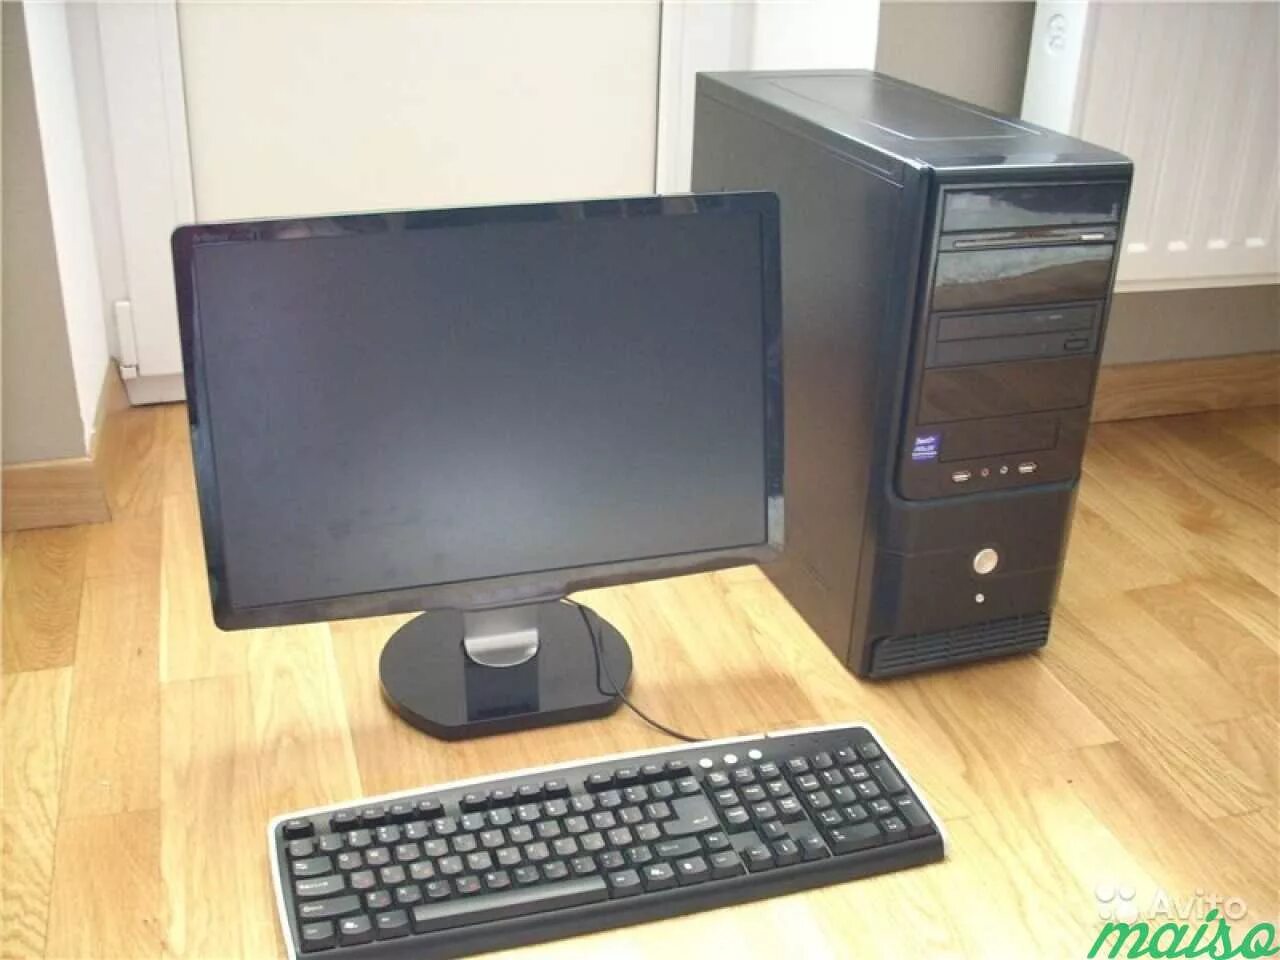 Купить недорогой б у компьютер. Компьютер Core i5-6570. Компьютер в сборе (монитор 19 LG,MD Foxconn.Intel Celeron e1400 ). Системный блок Core i3 540m. Компьютер (сист. Блок, монитор TFT 27 Acer Black). Инв..